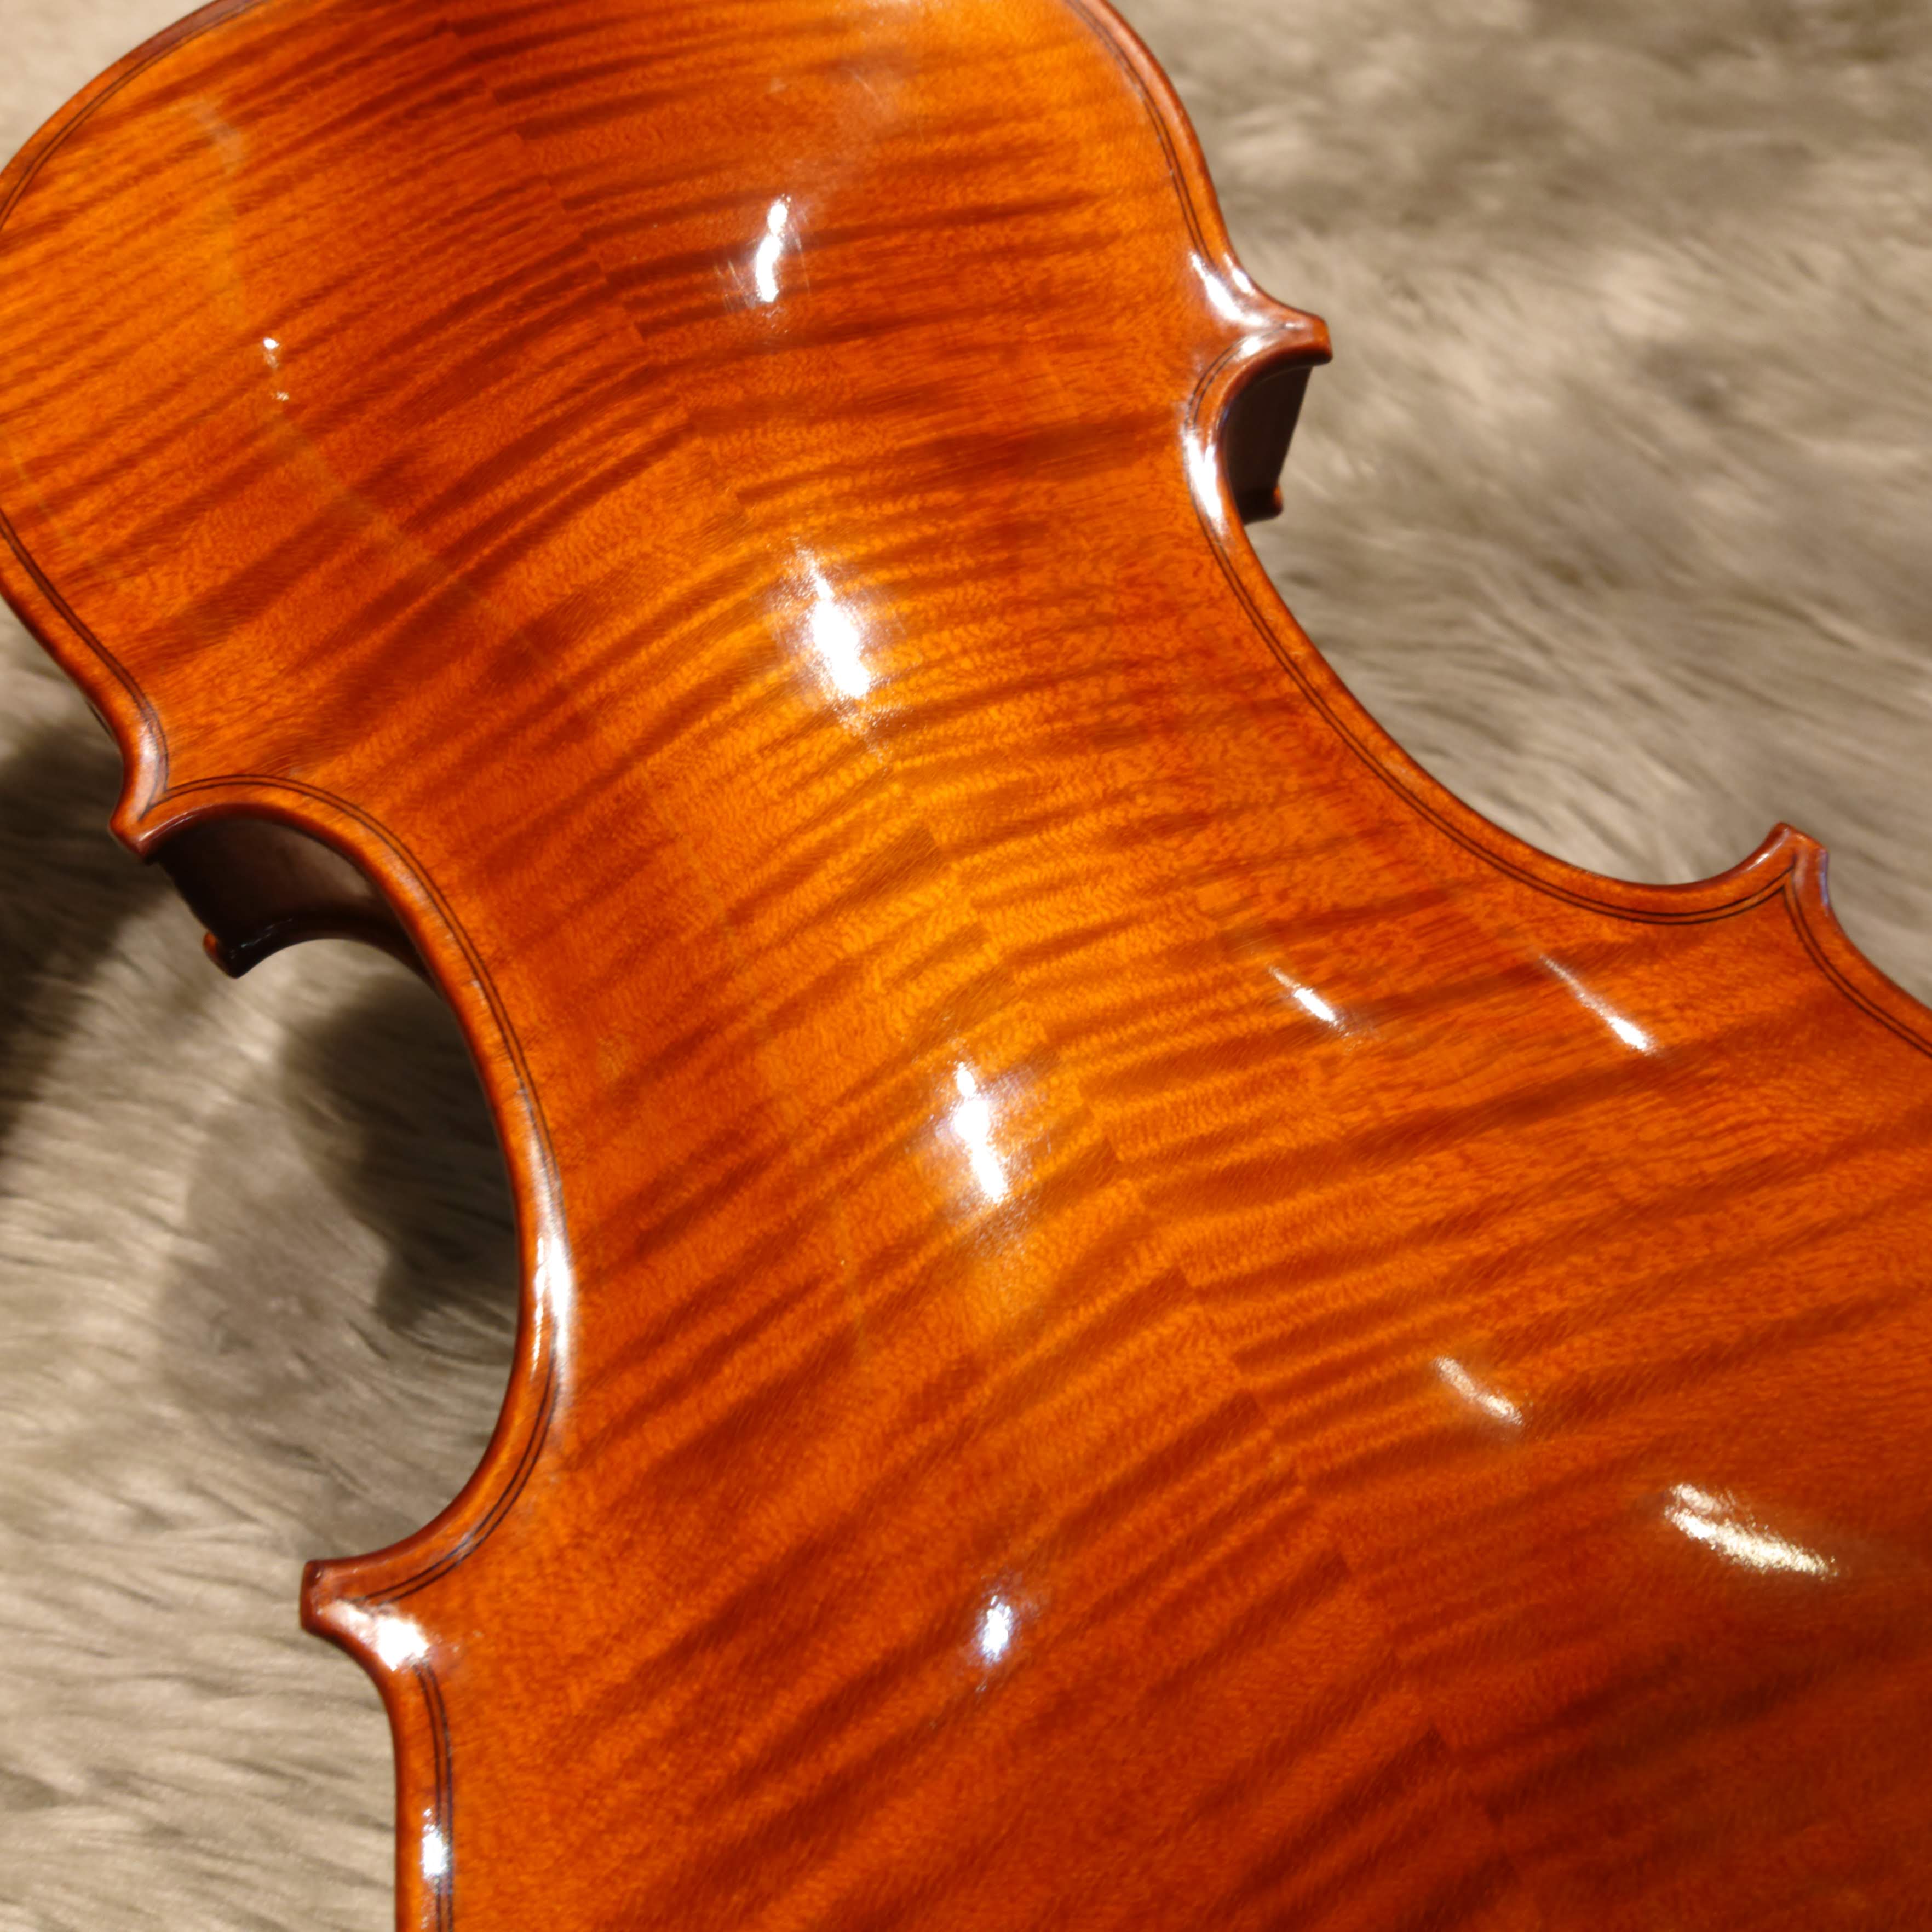 *伝統に裏づけされた確かな造り。クヴィントのバイオリン チェコ＝ルヴィでバイオリン製作を行っているクヴィント社は、17世紀から続くチェコのバイオリン製作の伝統を受け継ぎ、]]ボヘミアの有能な職人によって手がけられた良質バイオリンです。有名なドヴォルザーク・カルテットの監修のもと、音質テストを繰り返し […]